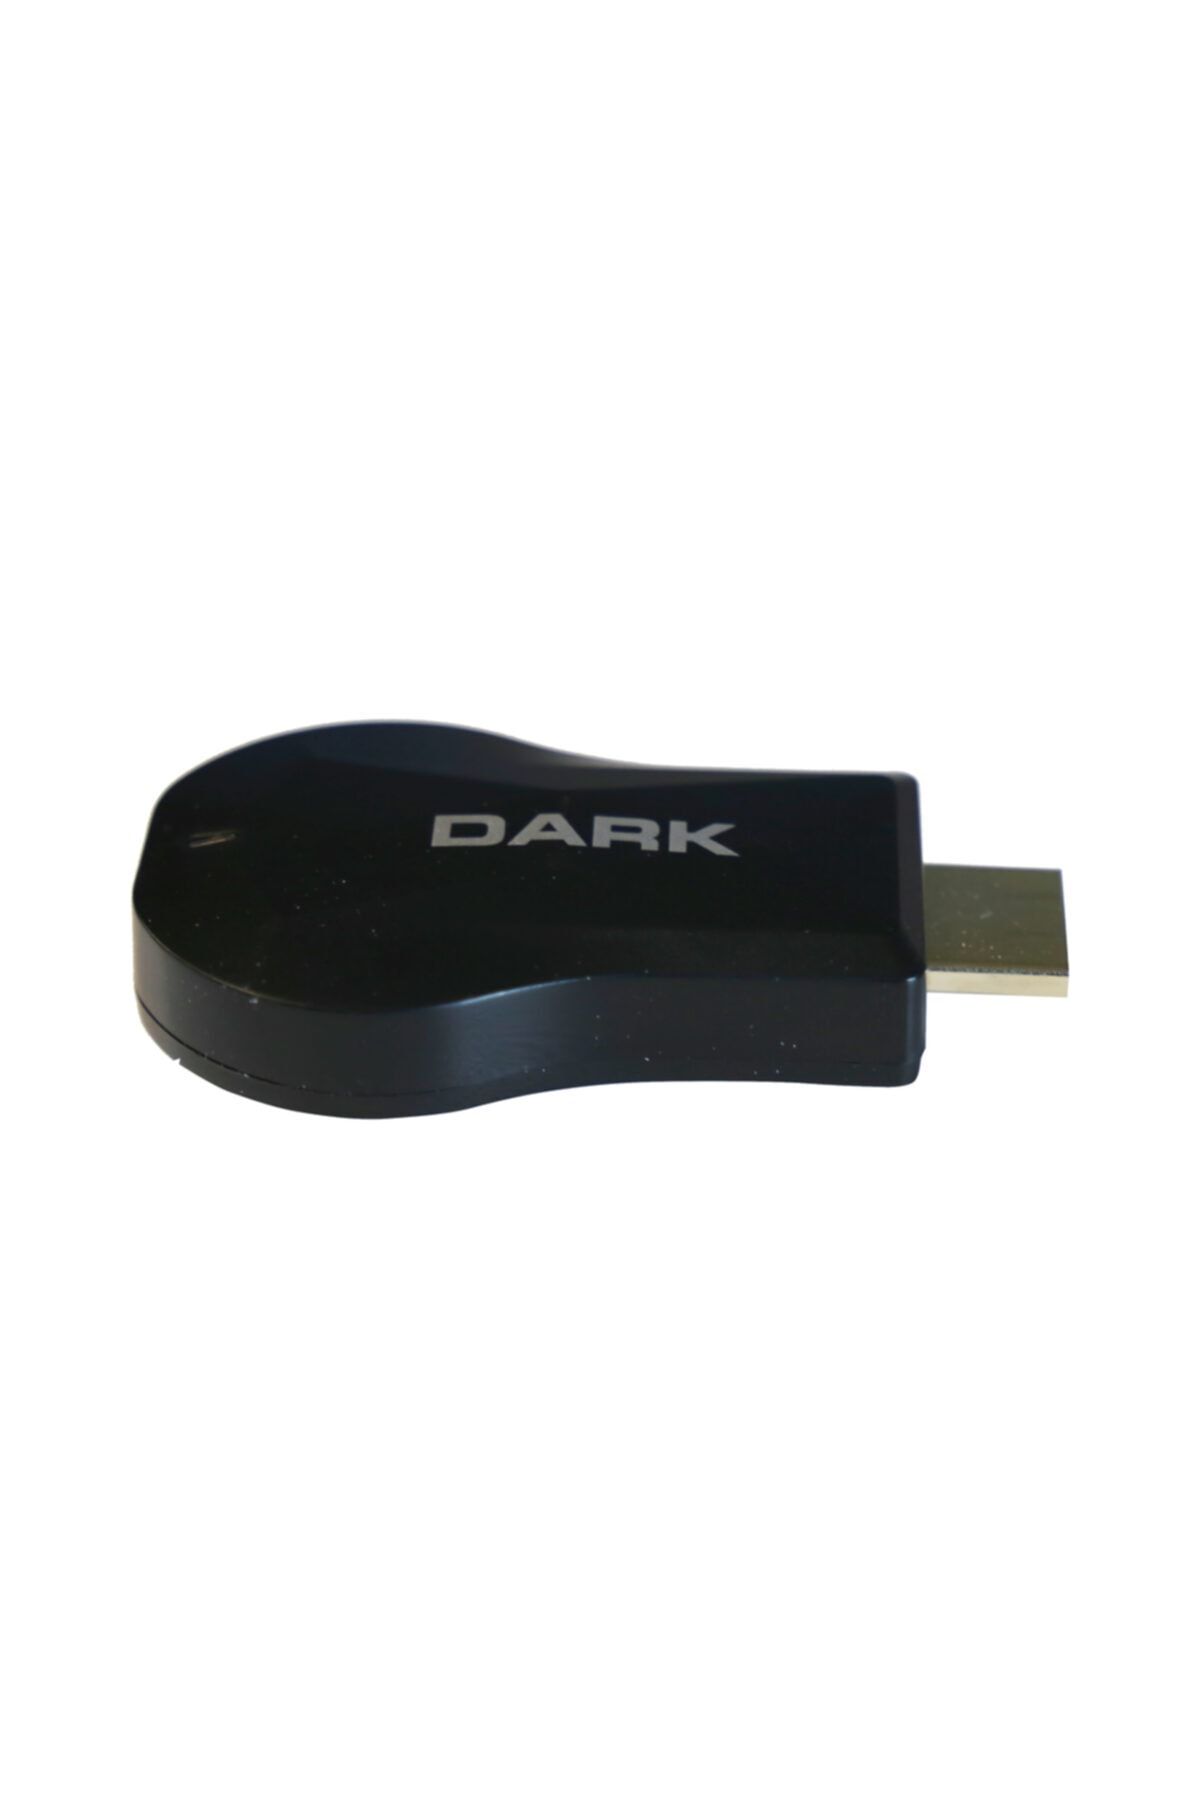 Dark Miracast Airplay Kablosuz Hdmı Görüntü Aktarıcı